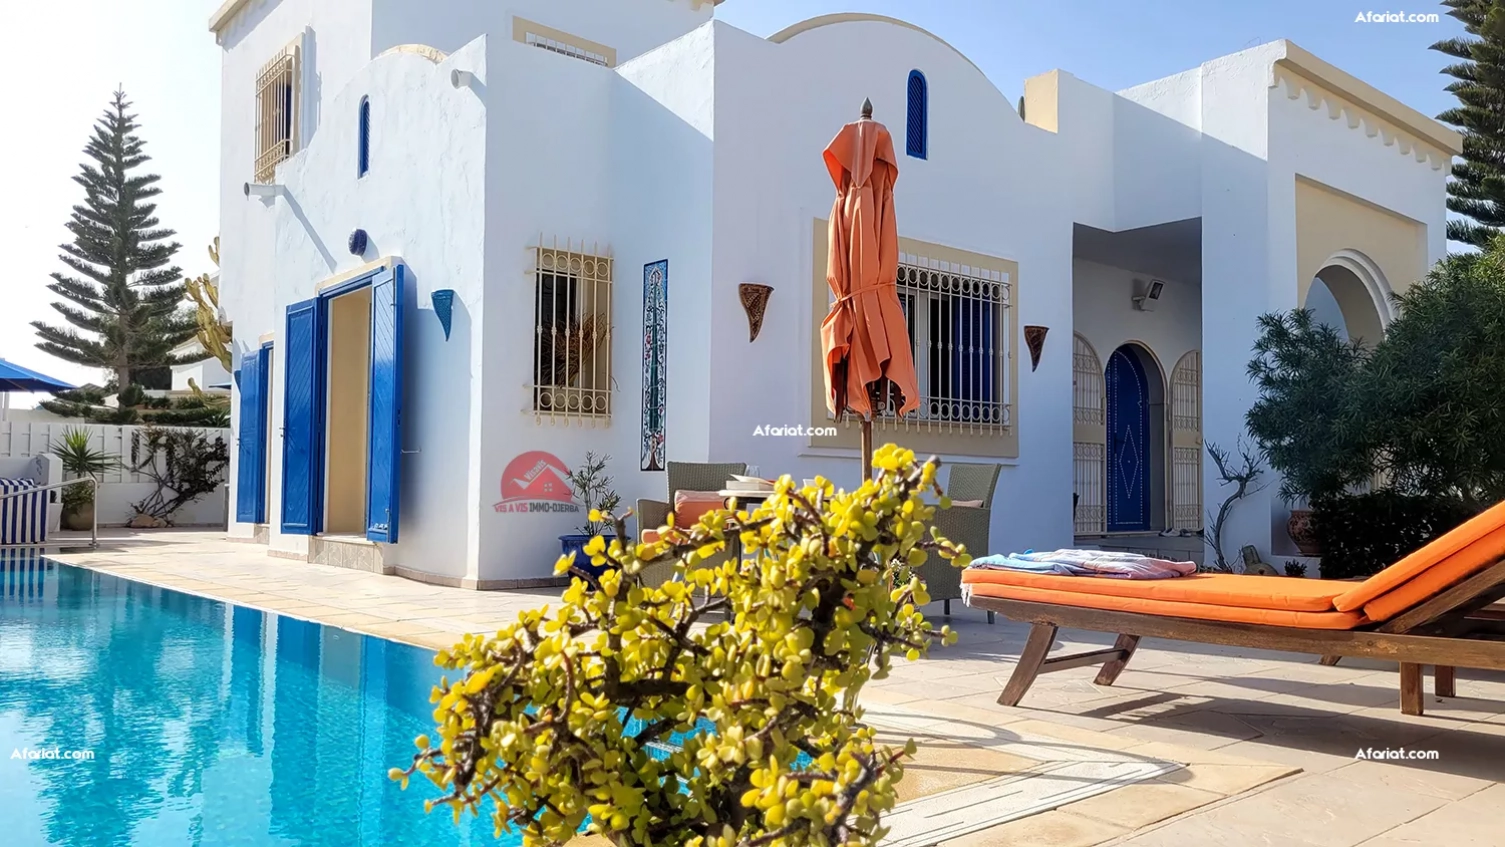 A vendre en zone touristique belle villa avec piscine privée – ré